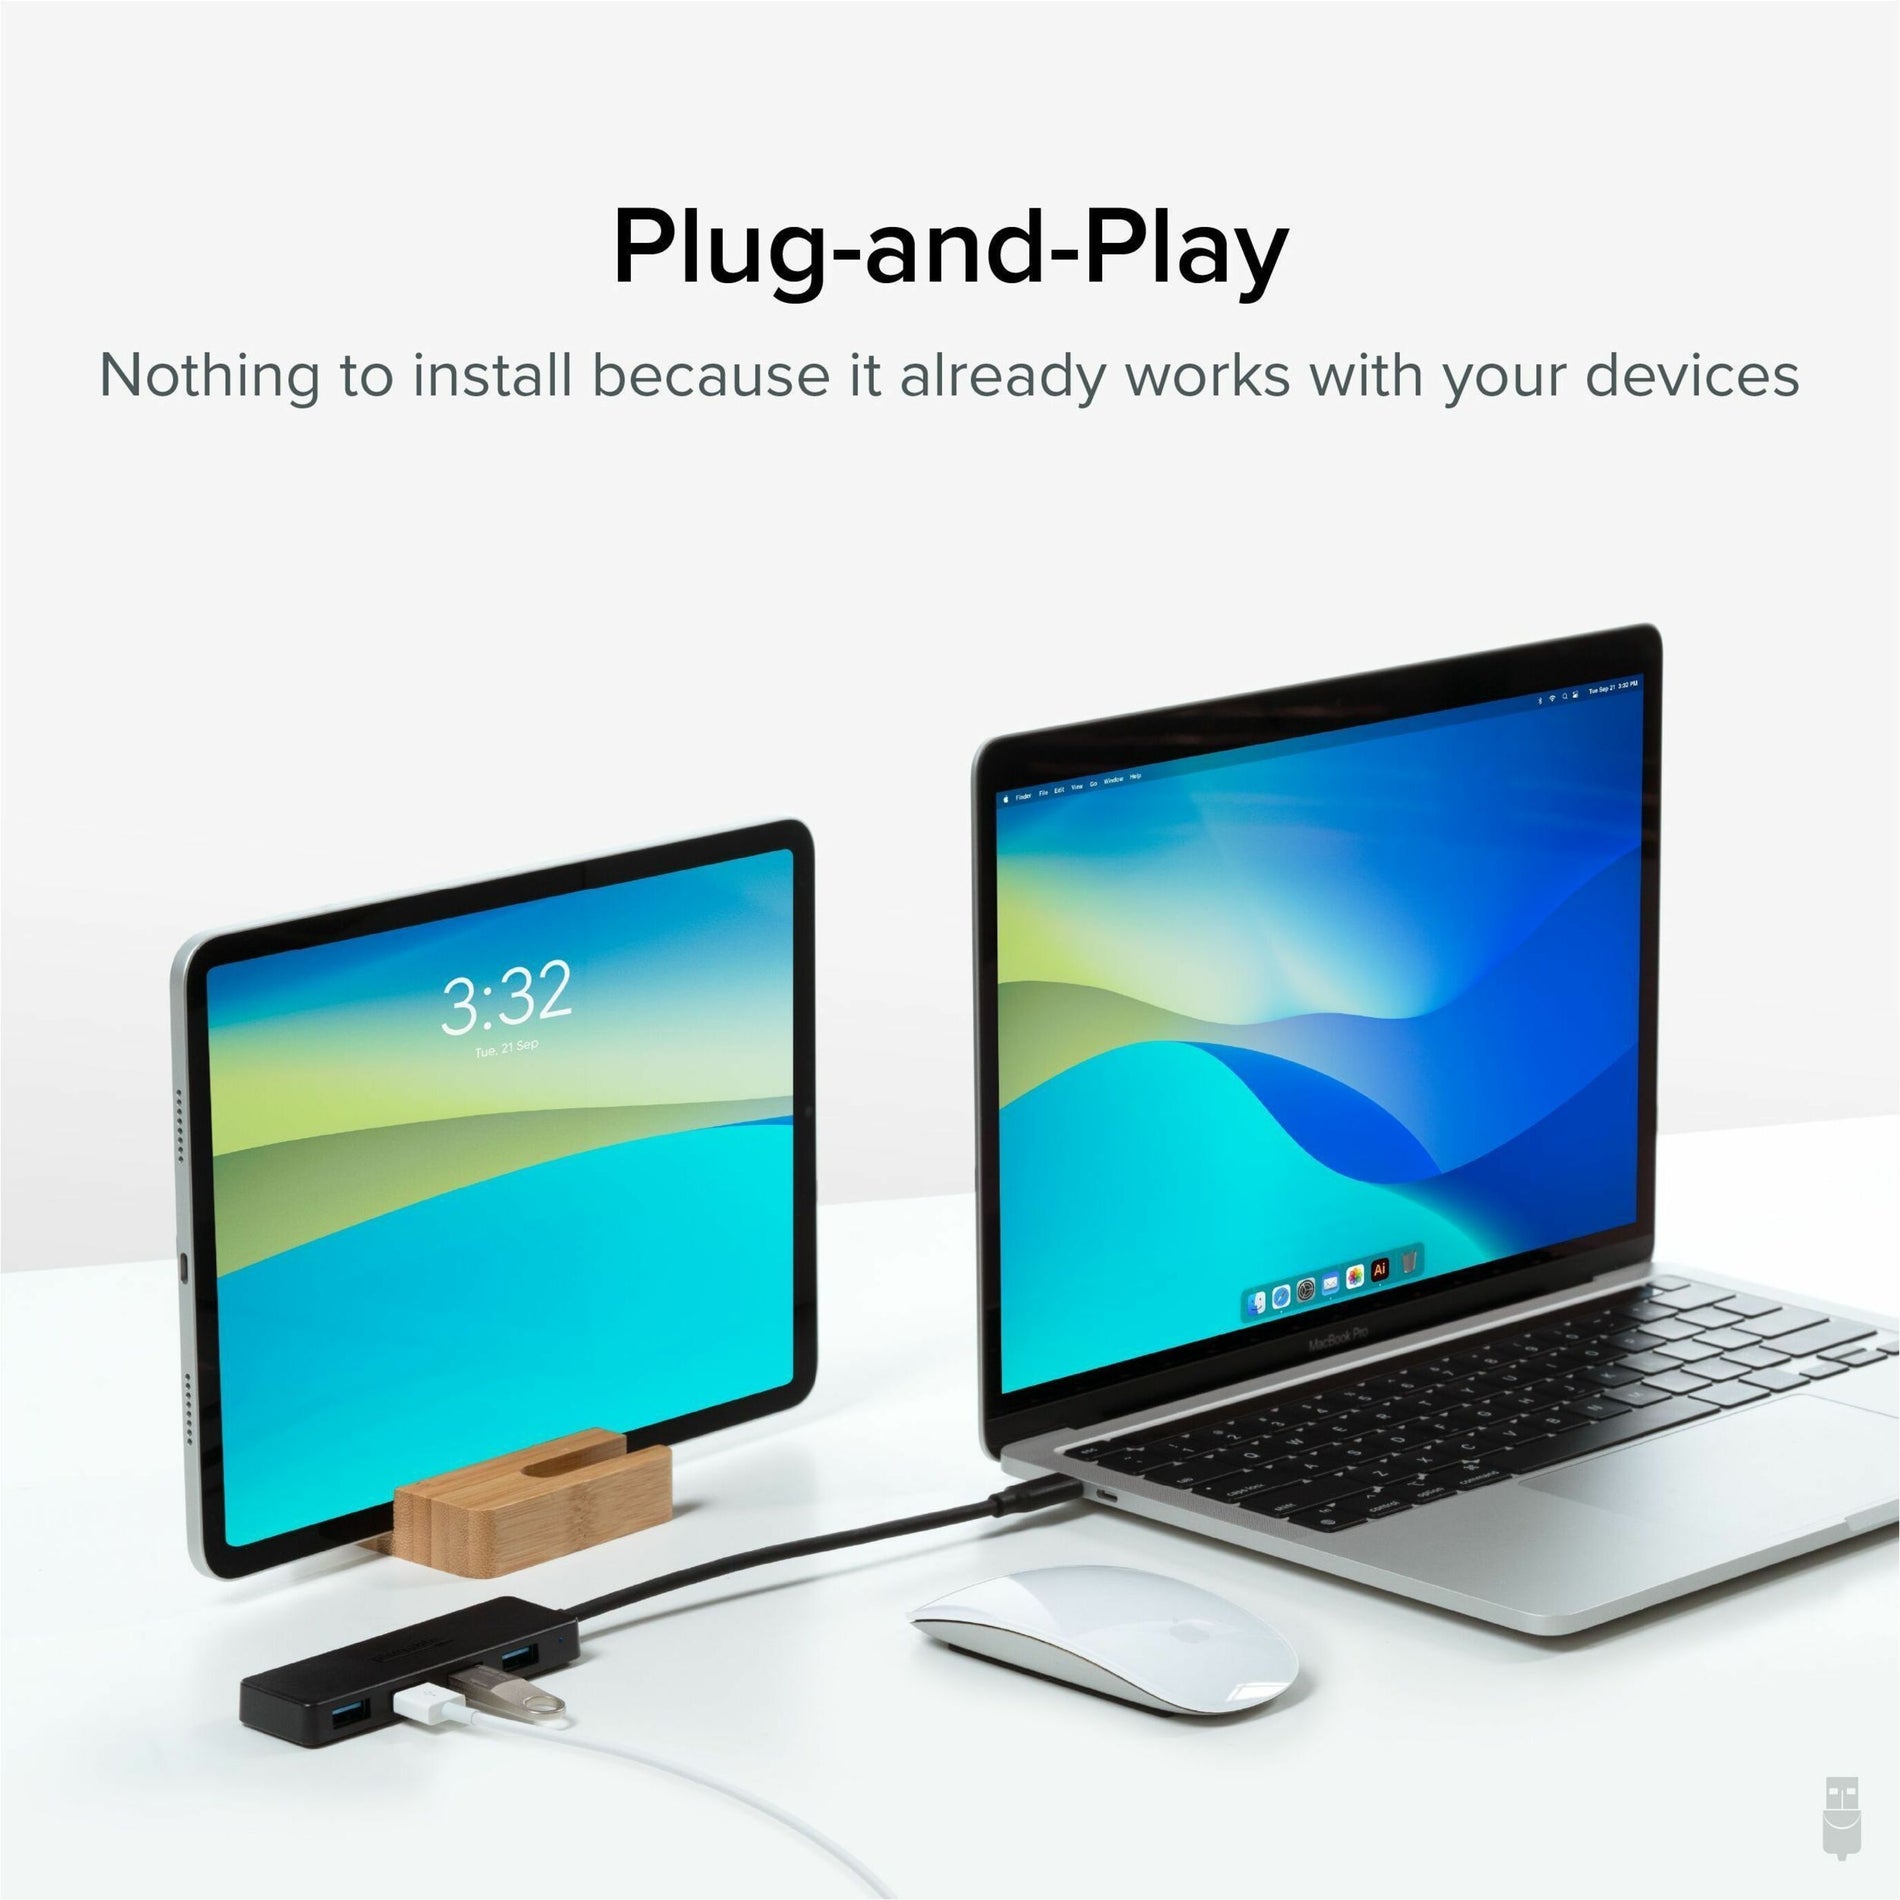 العلامة التجارية: Plugable يو أس بي سي- هاب4أ USB هاب، 4 منافذ يو أس بي 3.0، أسود